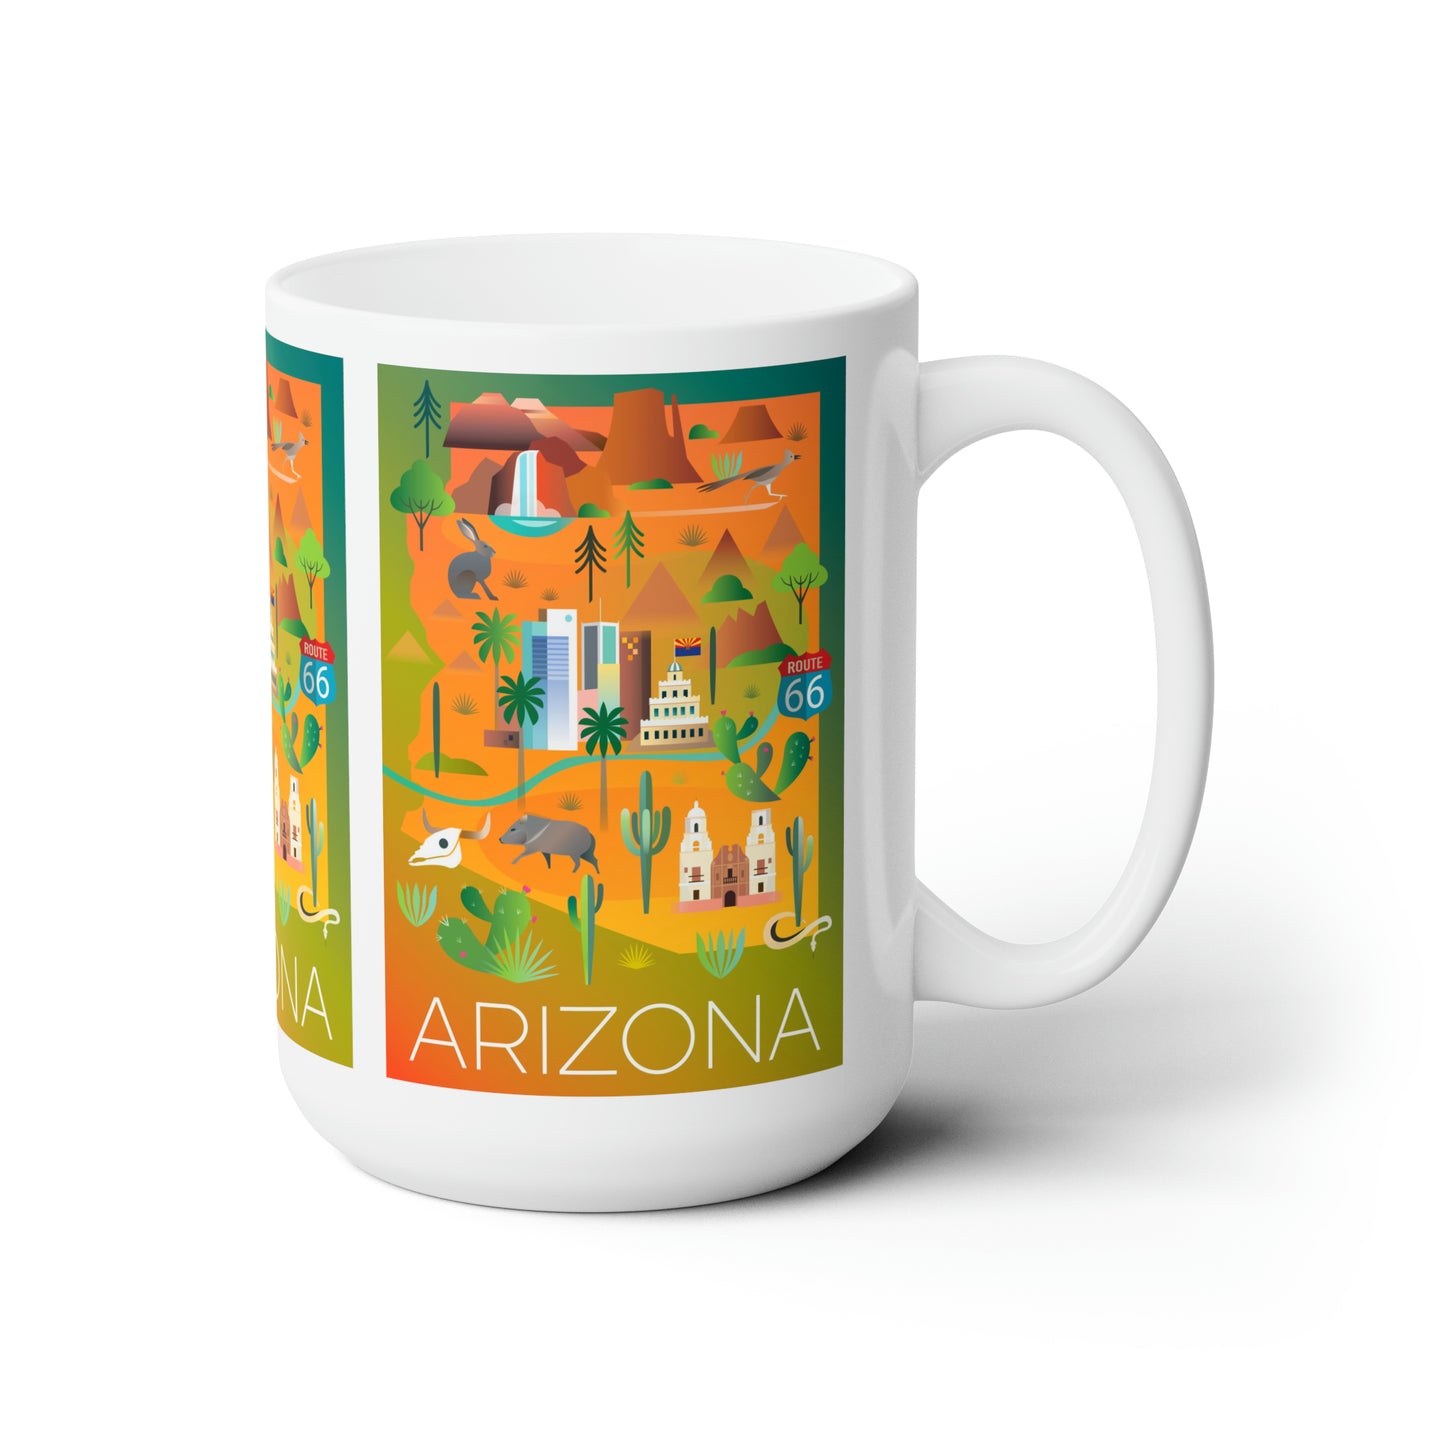 Arizona Ceramic Mug 11oz or 15oz